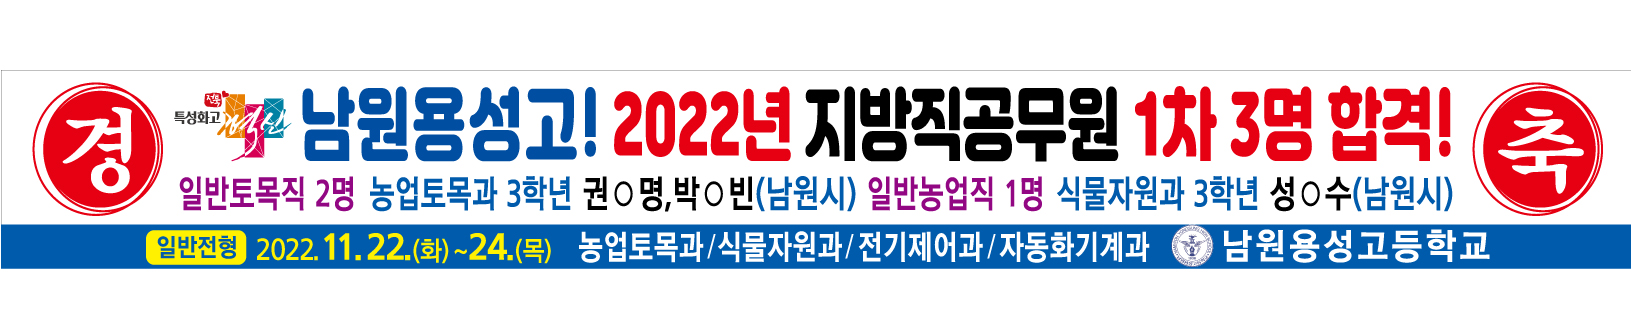 2022-지방직-공무원-합격-수정